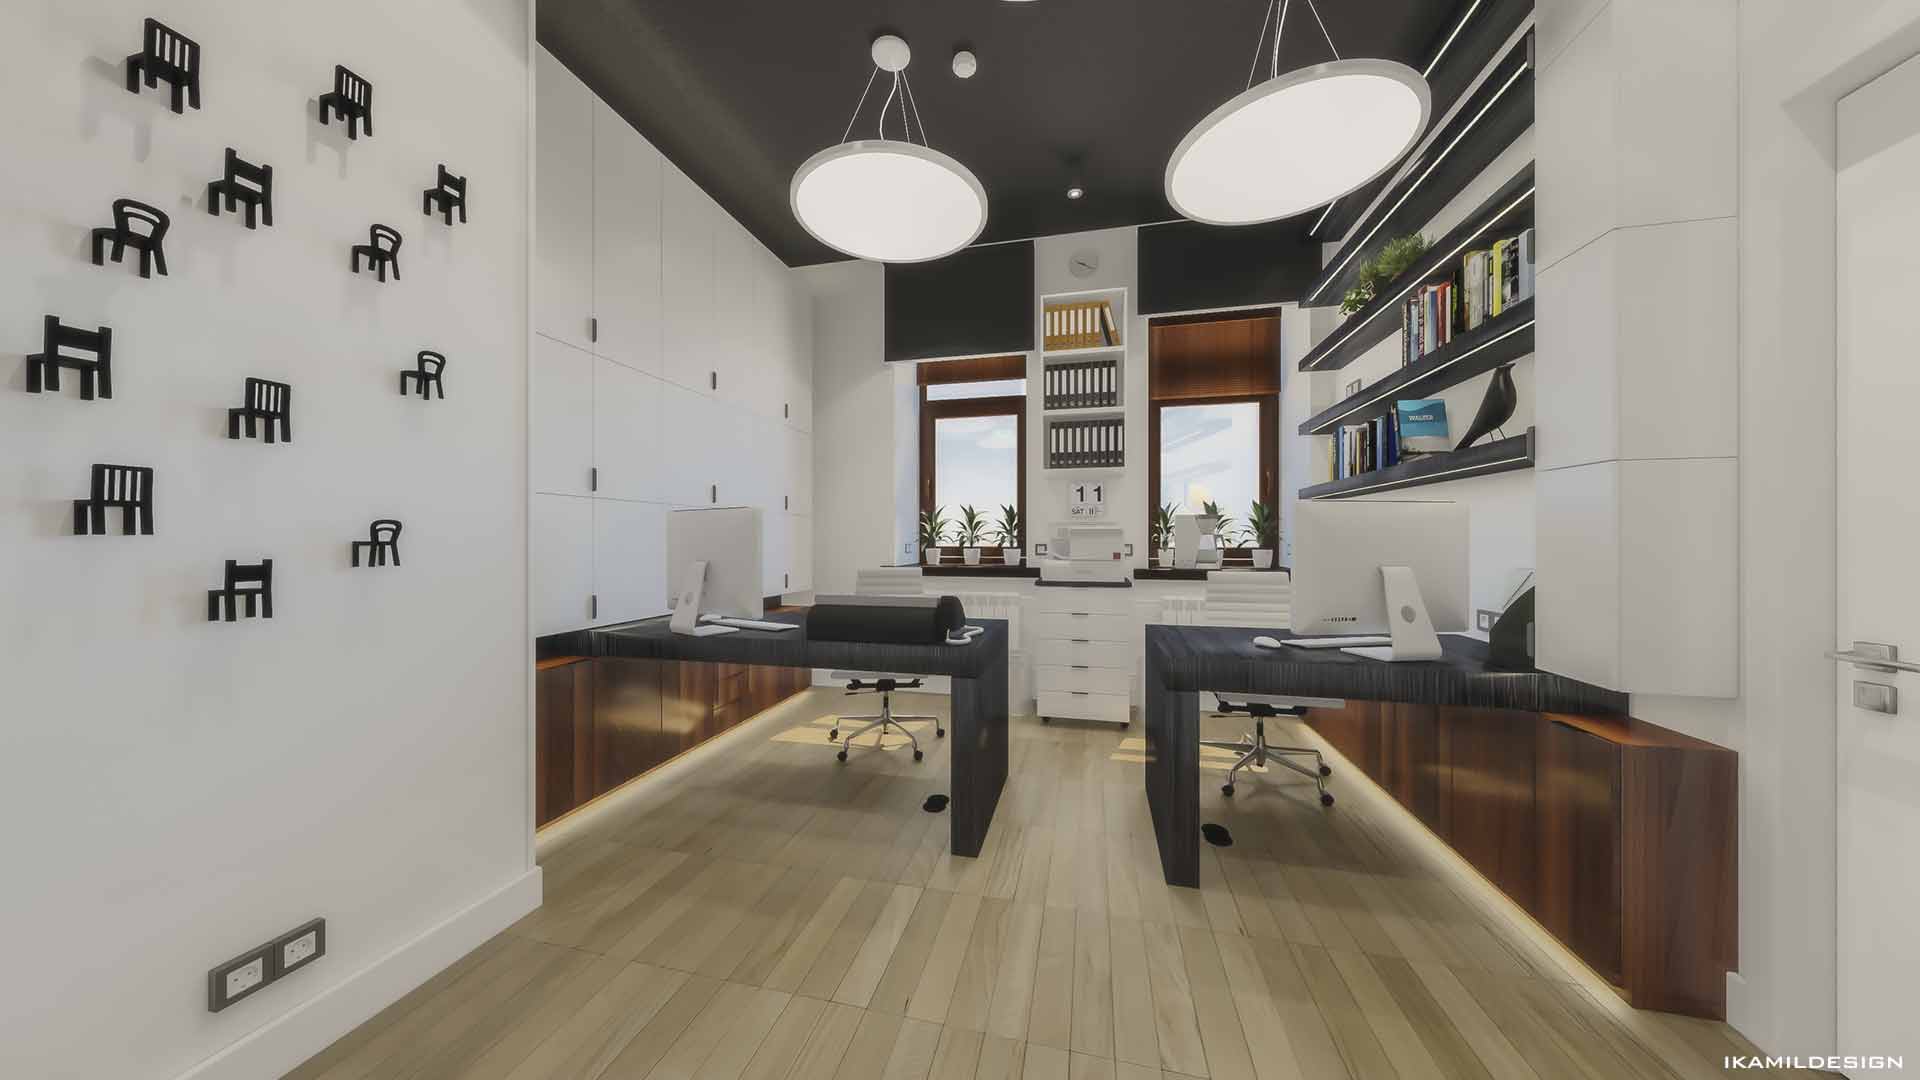 дизайн интерьера комнаты помощника руководителя, москва, ikamildesign 2020